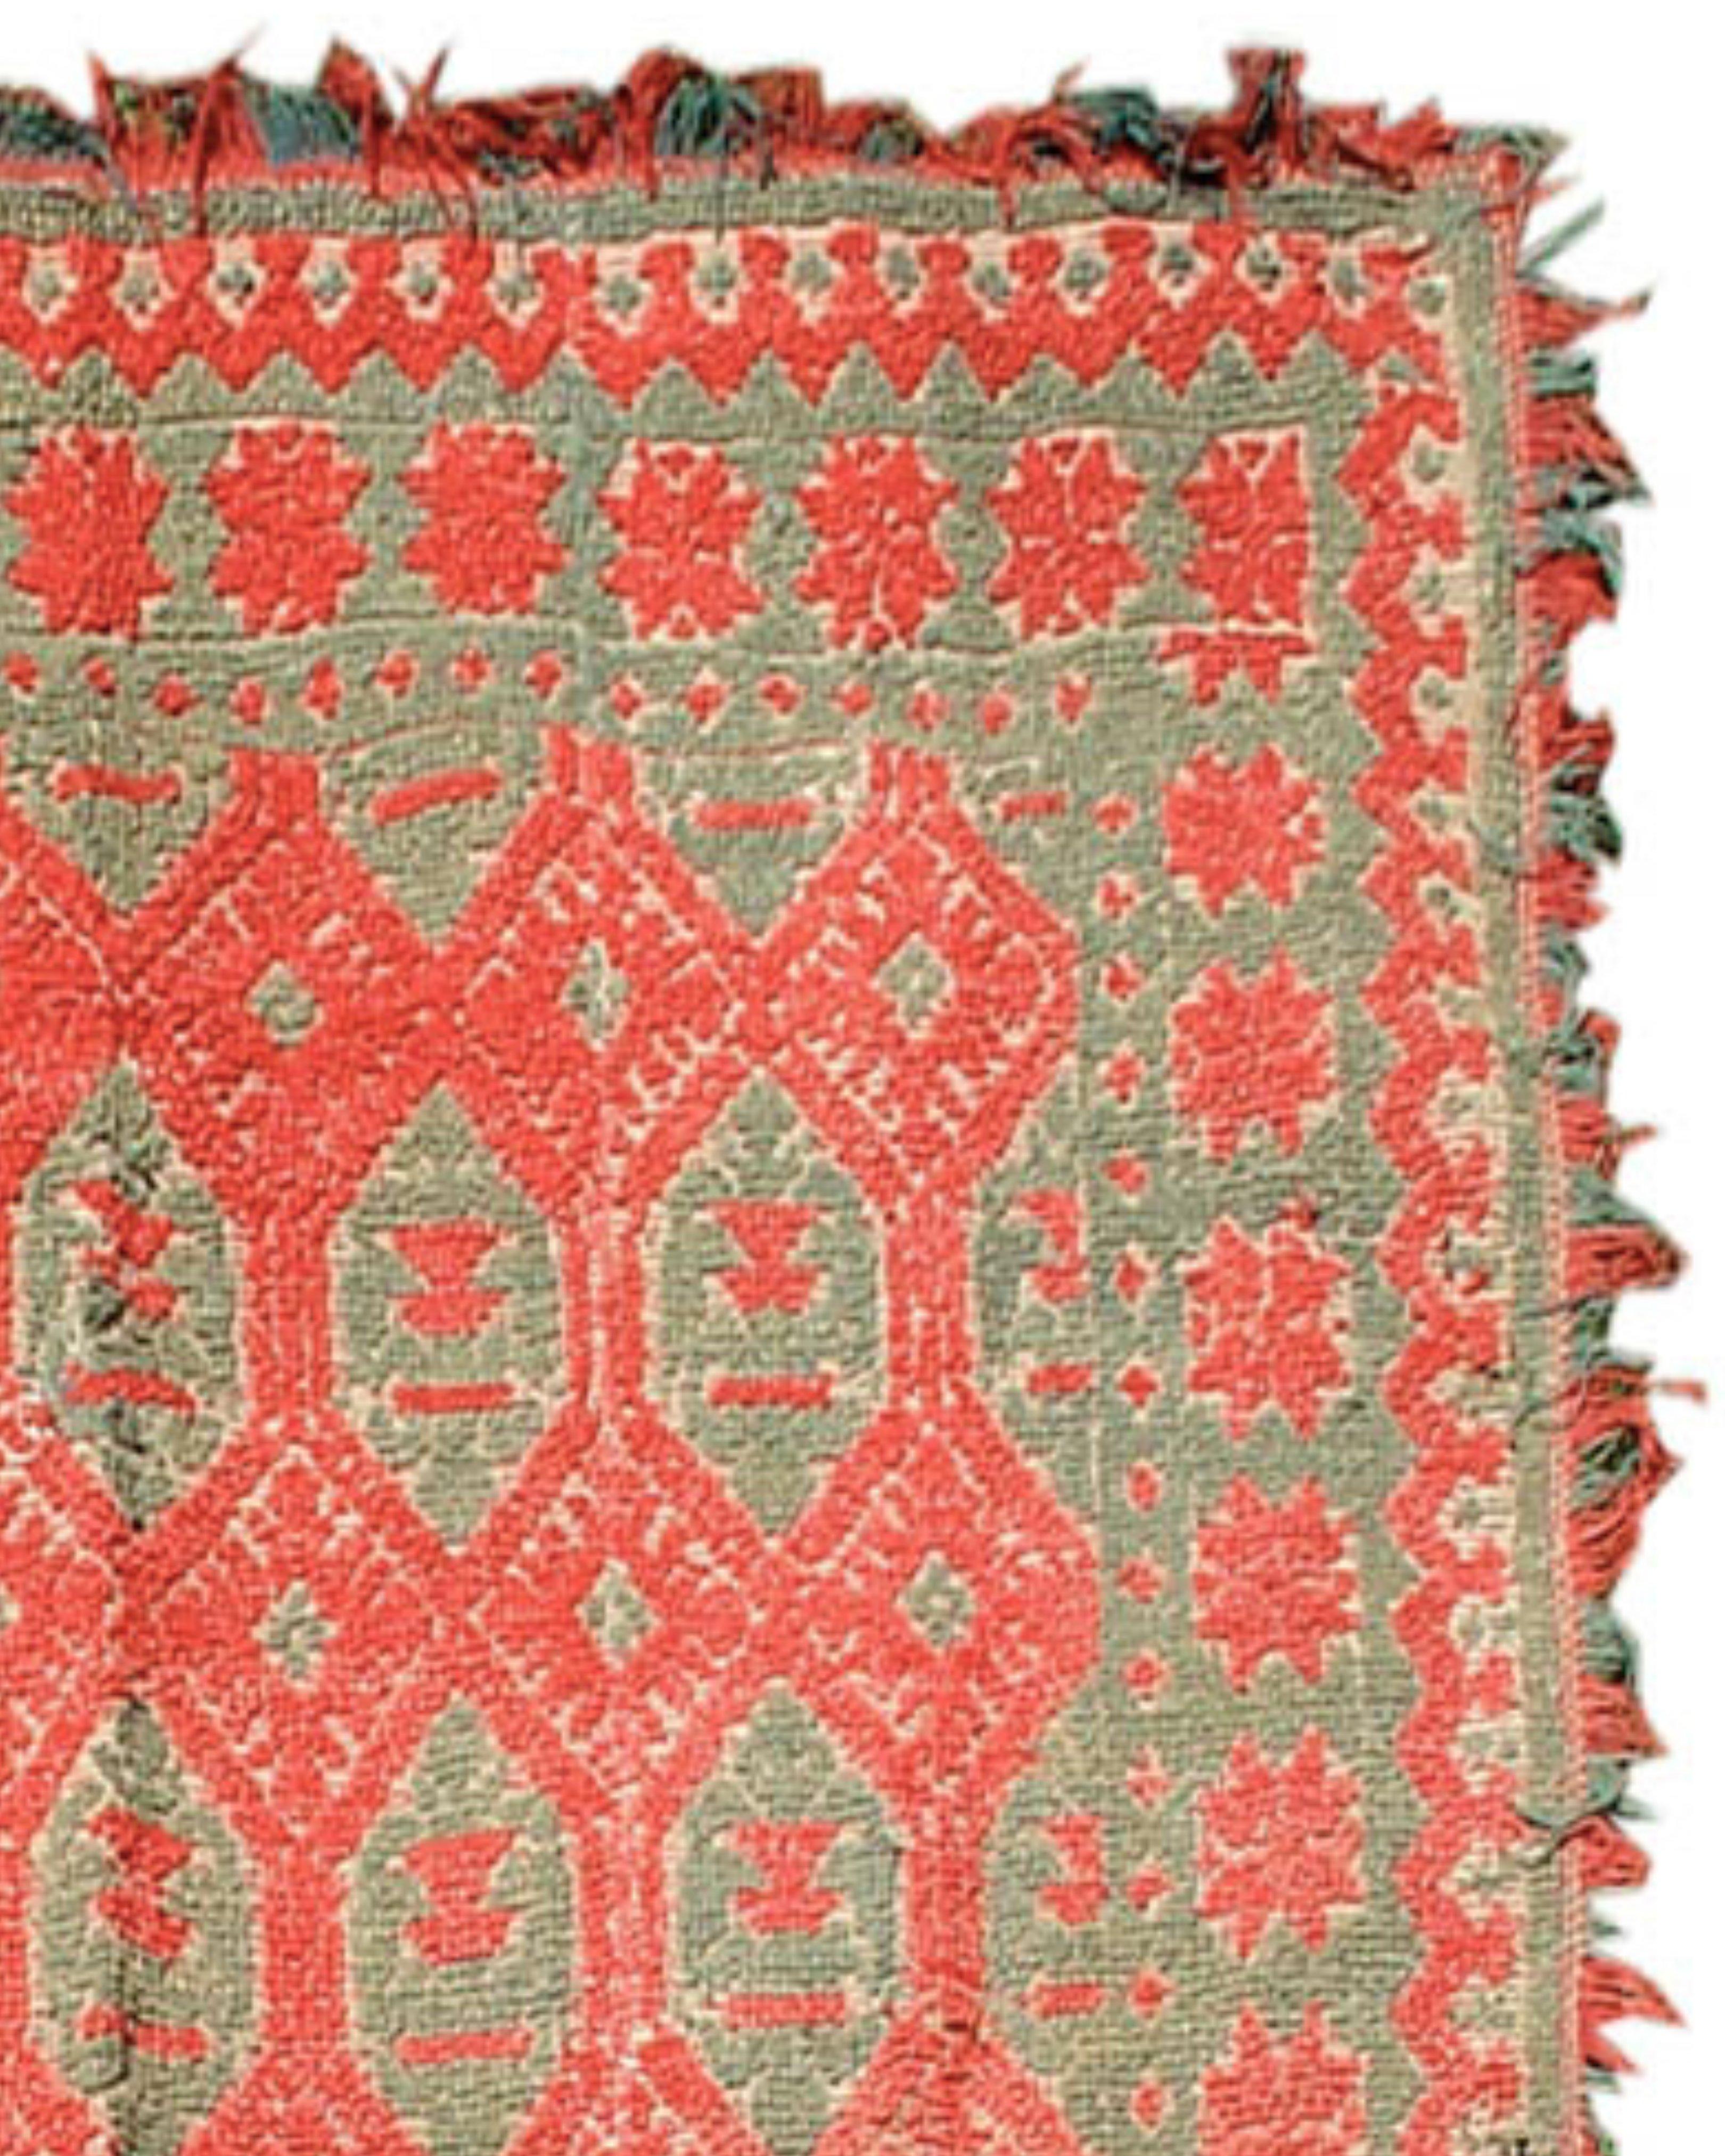 Antiker roter und grüner spanischer Alpujara-Teppich, 19. Jahrhundert

Zusätzliche Informationen:
Abmessungen: 5'11